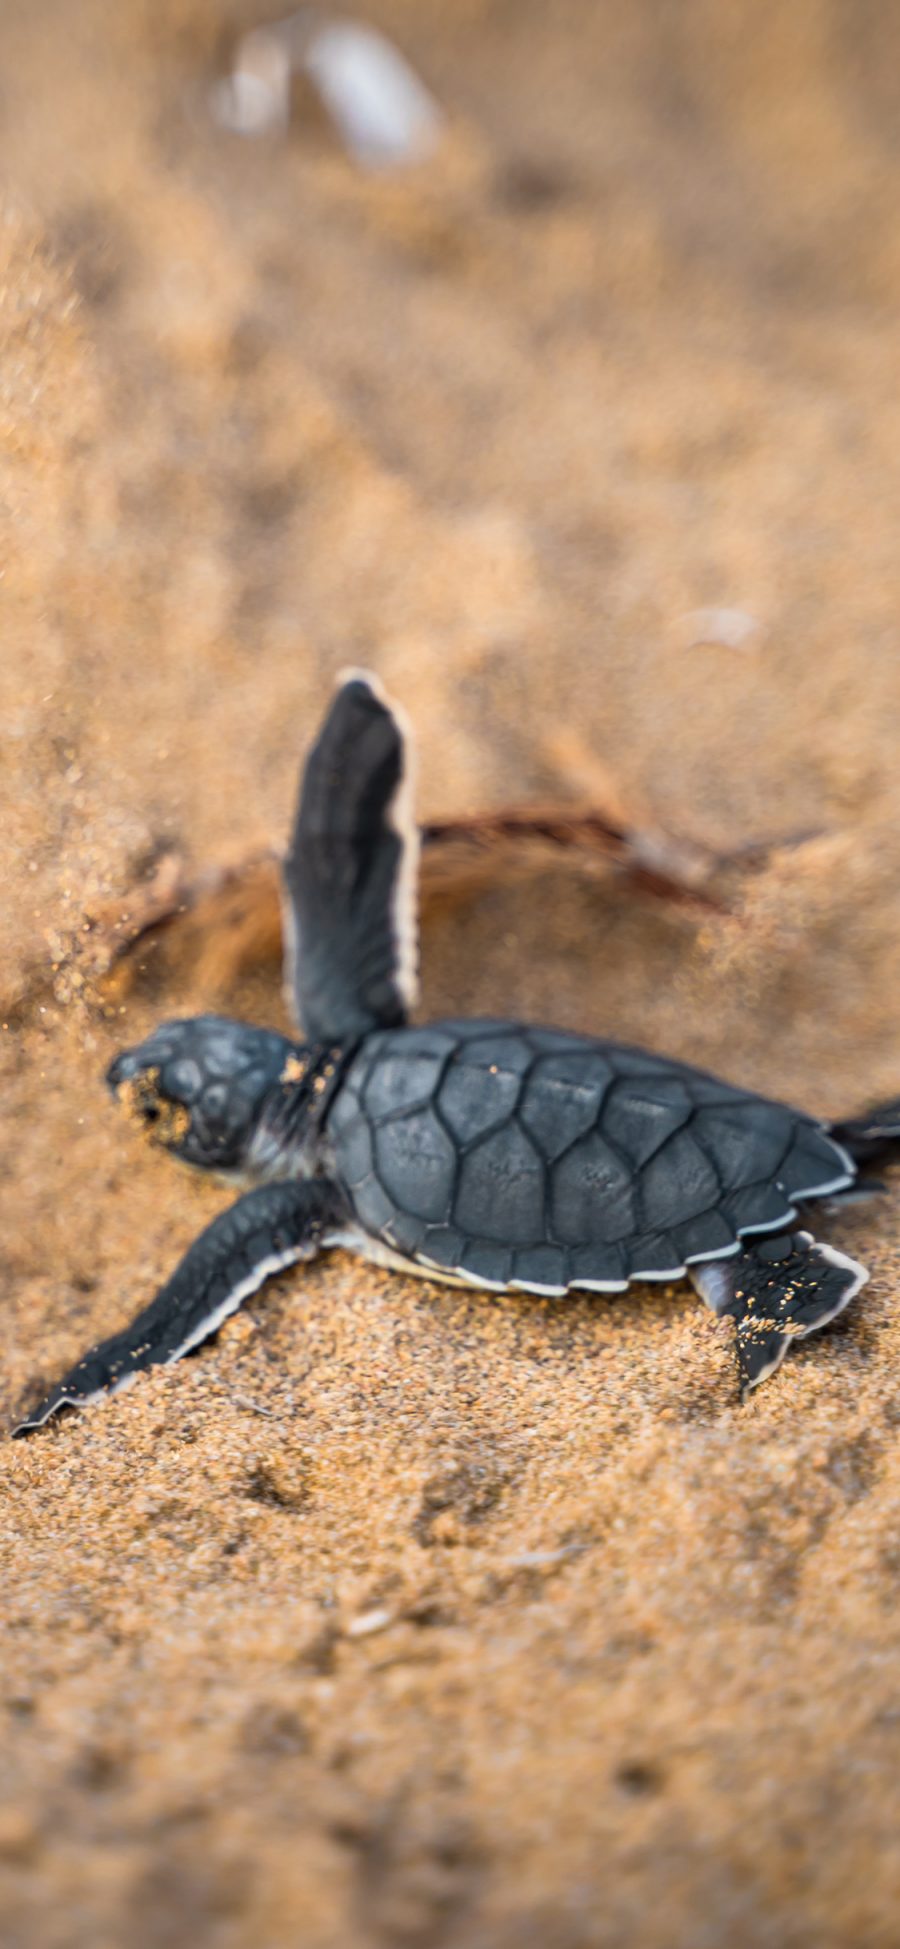 [2436×1125]沙滩 海龟 幼崽 海洋生物 苹果手机壁纸图片